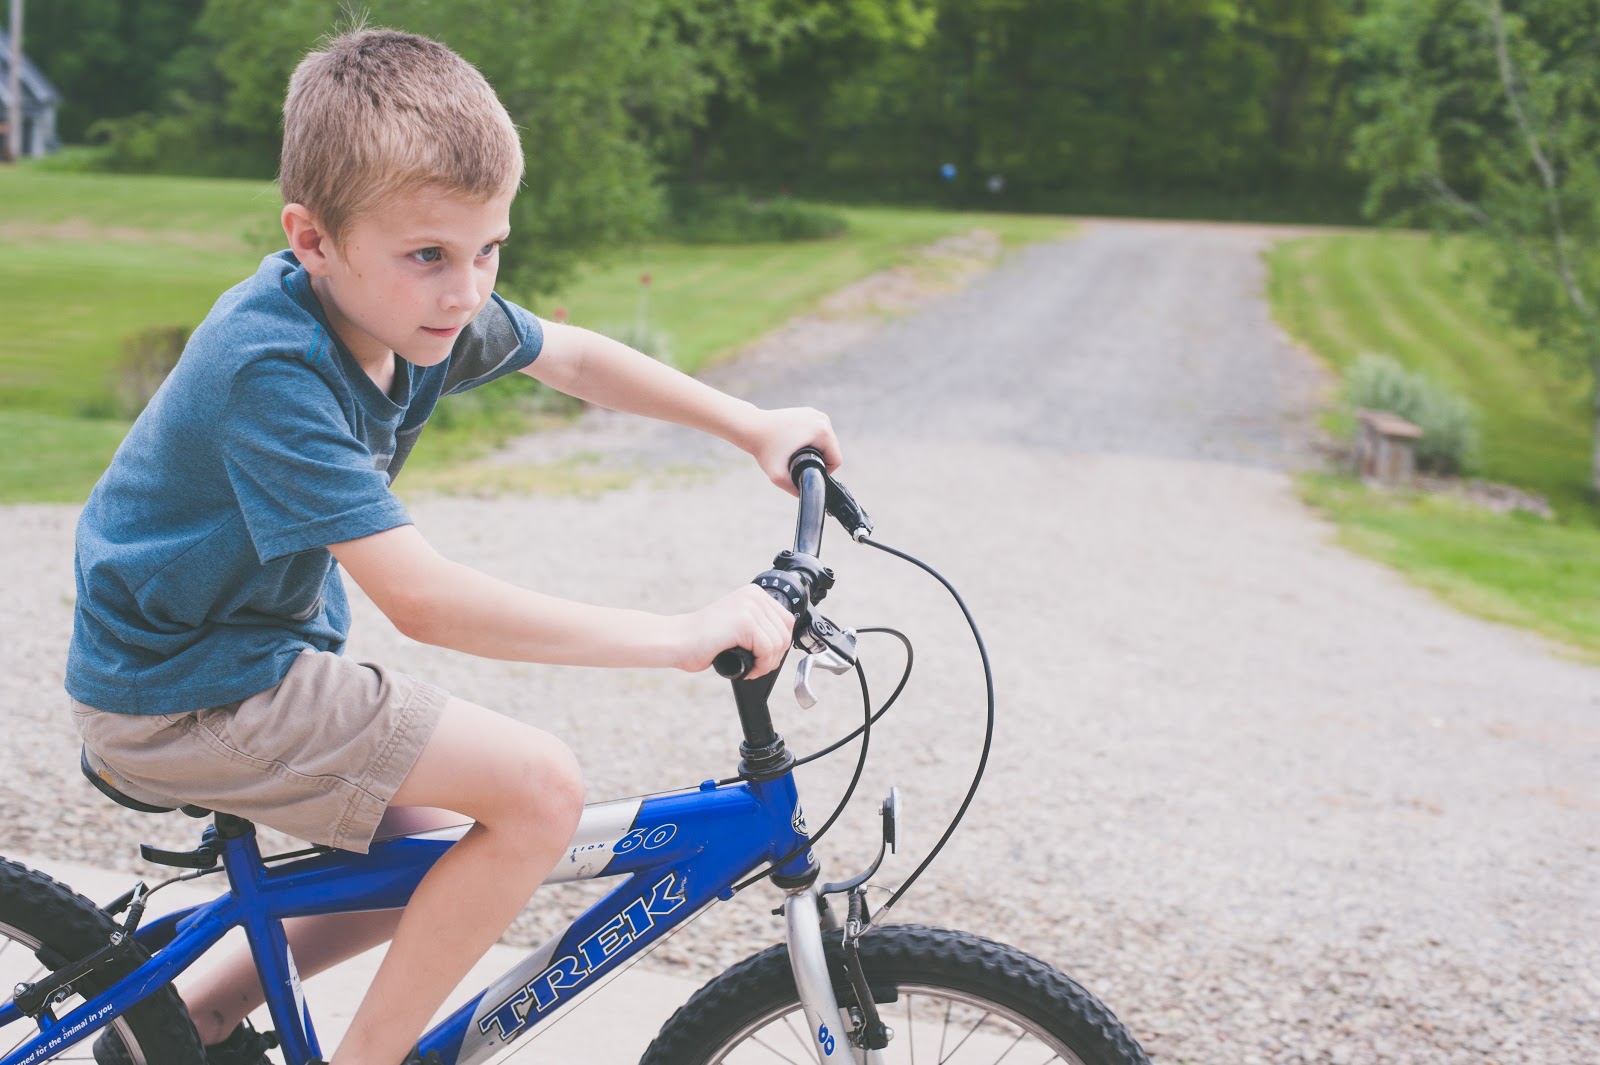 bicycle-boy-kid-1118413